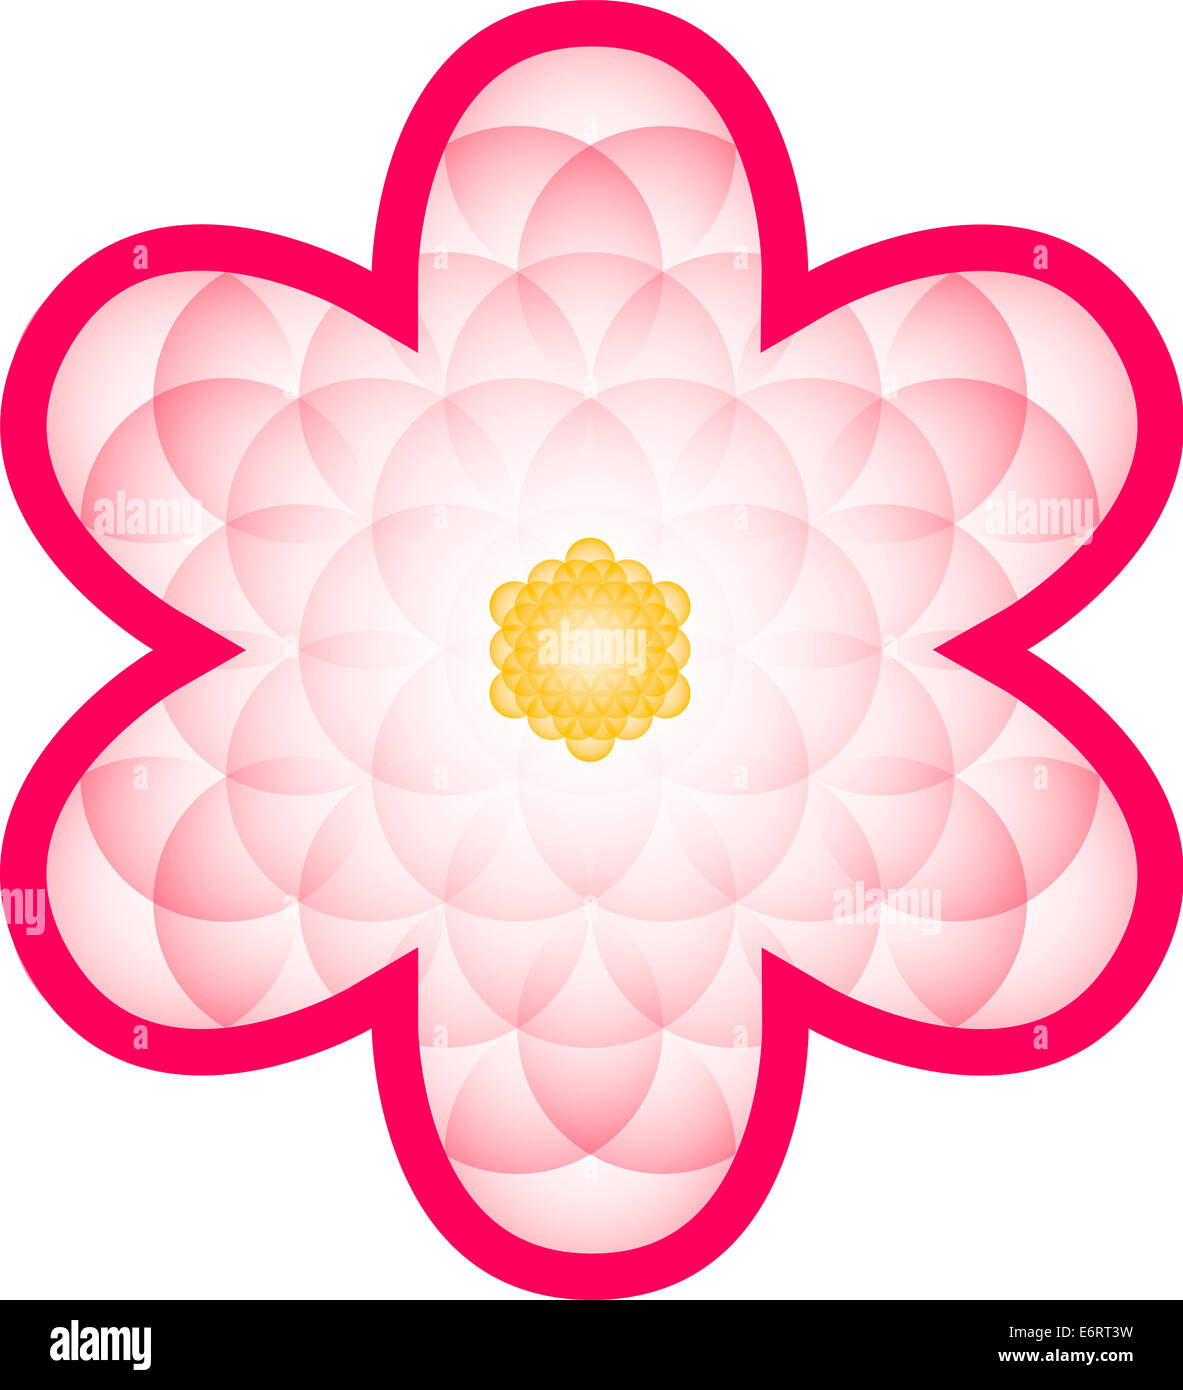 Fleurs Fleur de Vie - bloom Rose transparent composé d'une fleur de vie, une figure géométrique, composé de cercles qui se chevauchent Banque D'Images